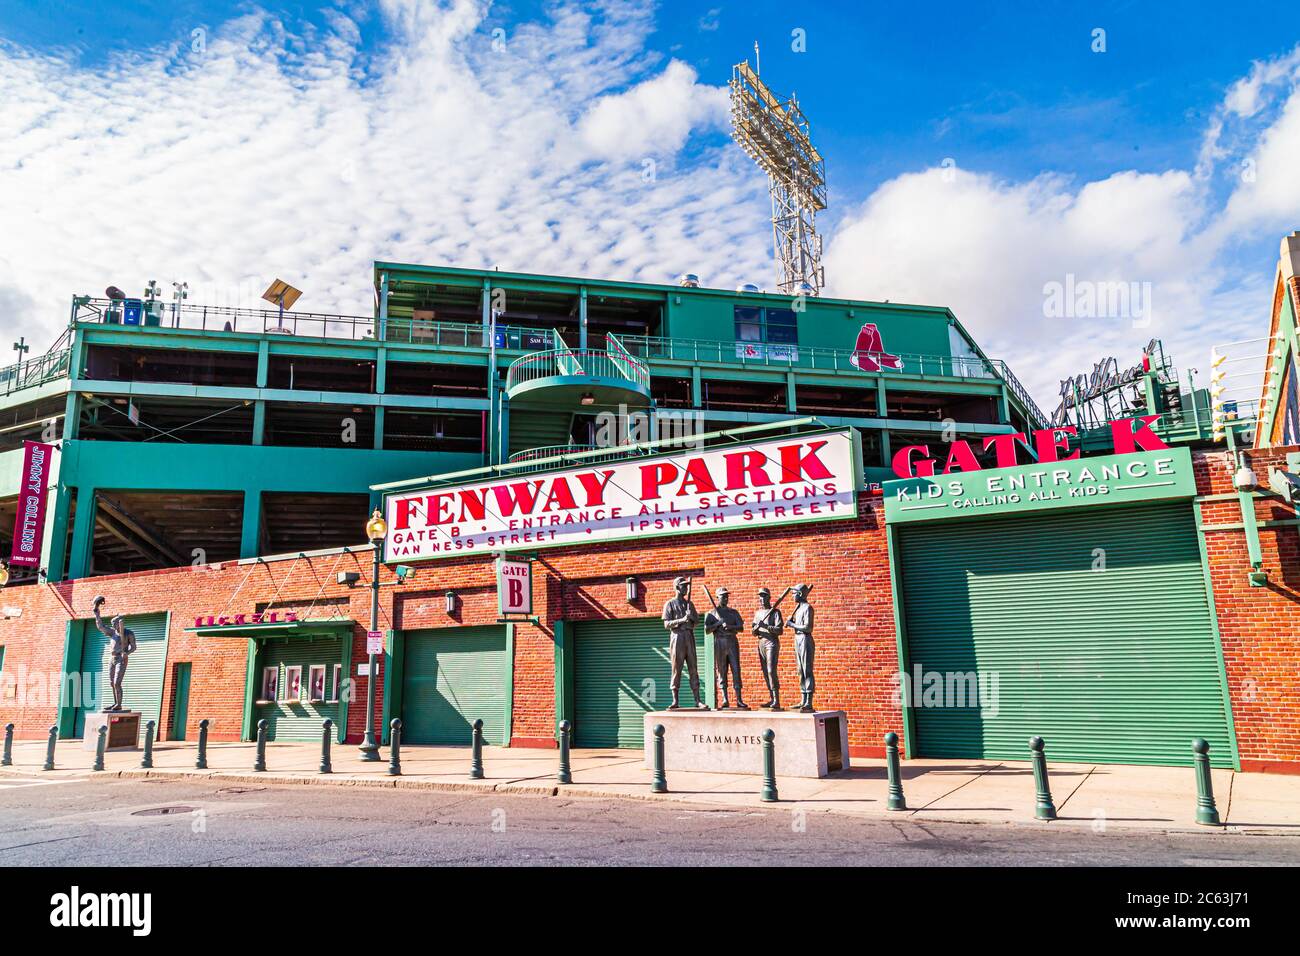 Fenway Park est un parc de baseball situé à Boston, Massachusetts, près de Kenmore Square. Depuis 1912, c'est le berceau du Boston Red Sox Banque D'Images